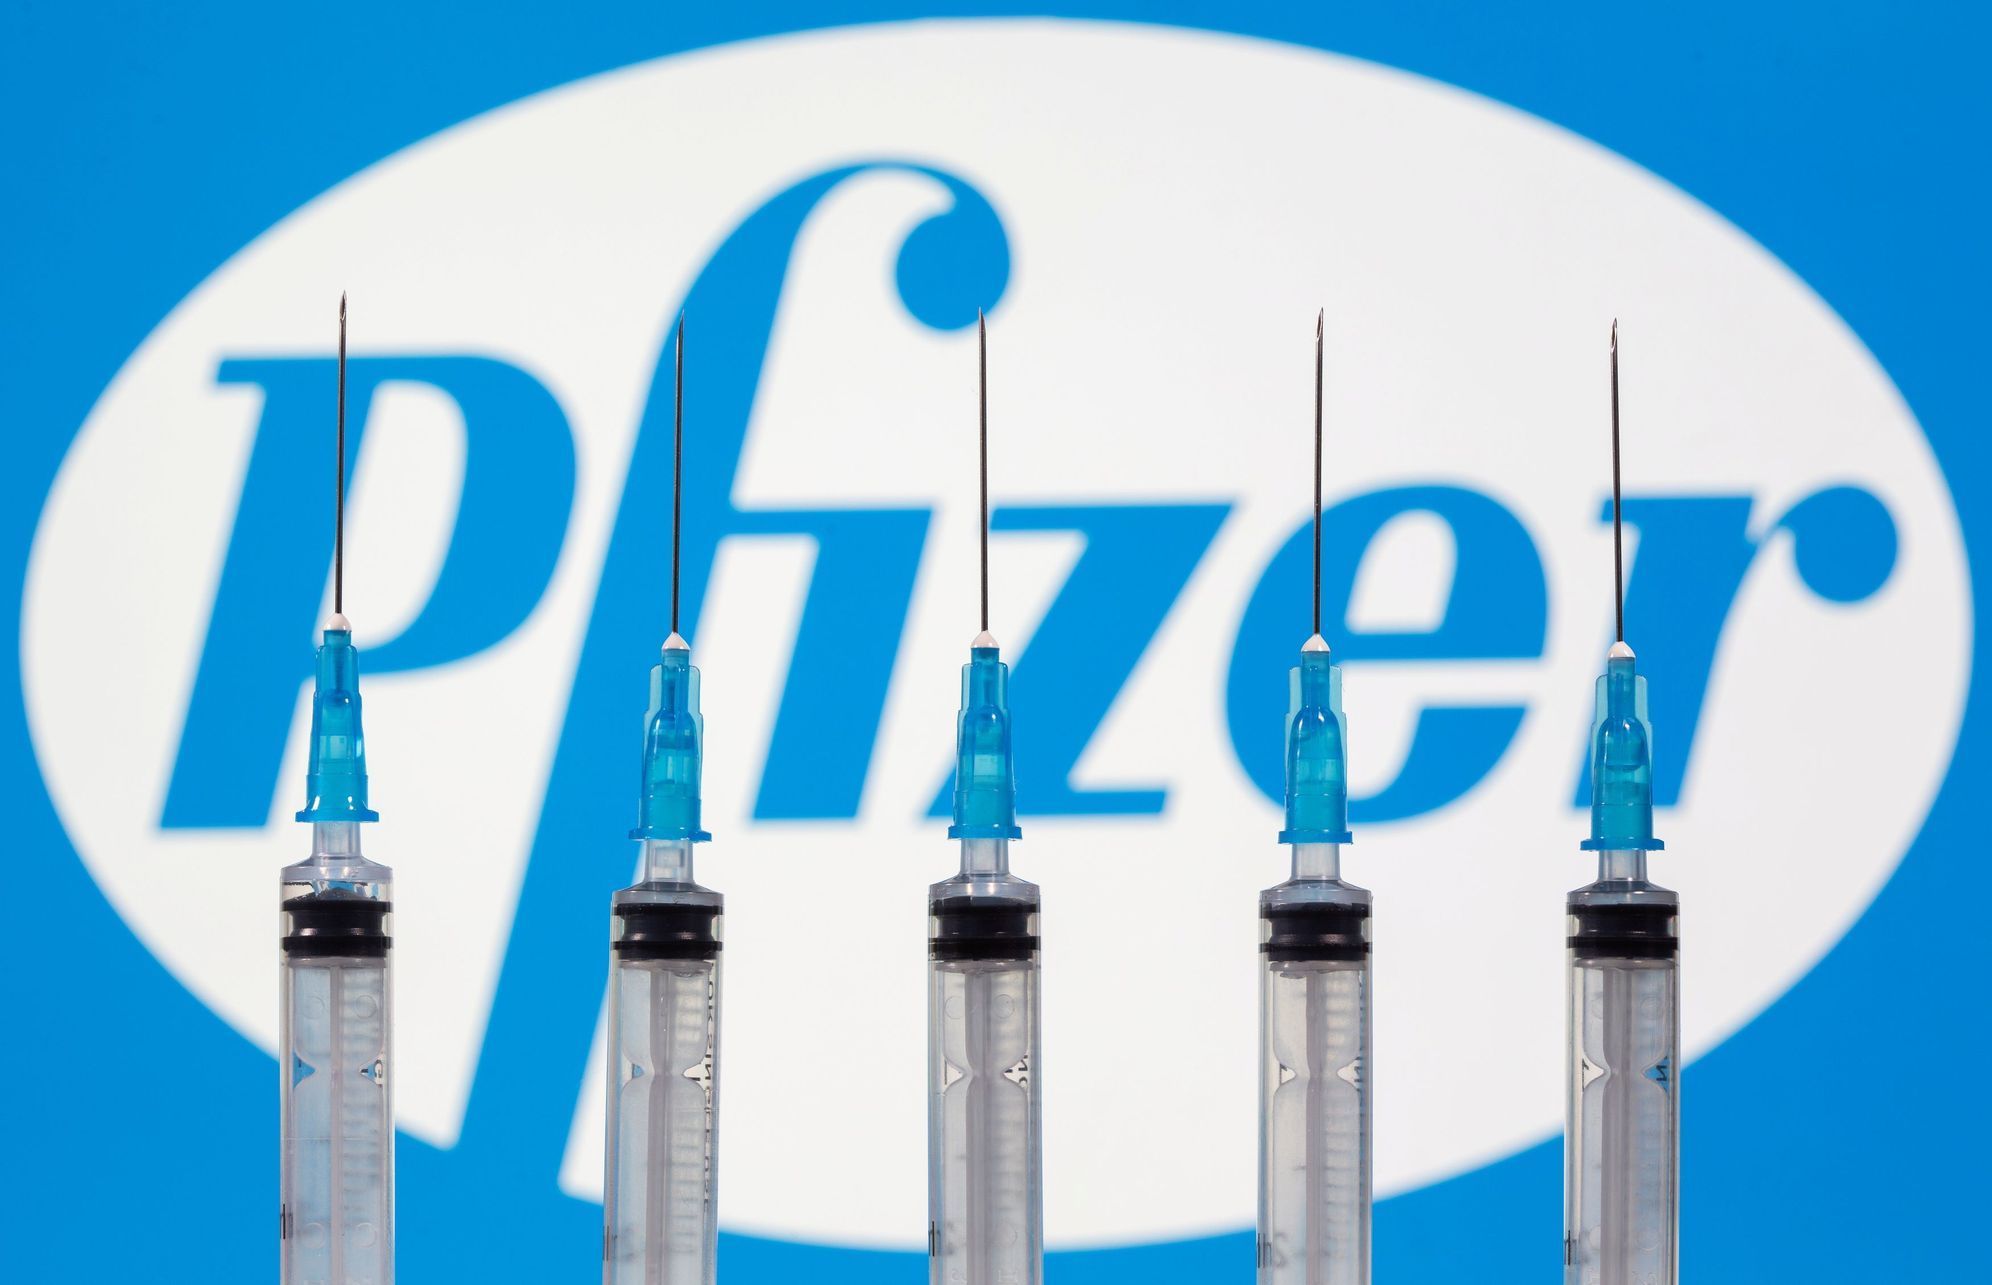 Logo firmy Pfizer